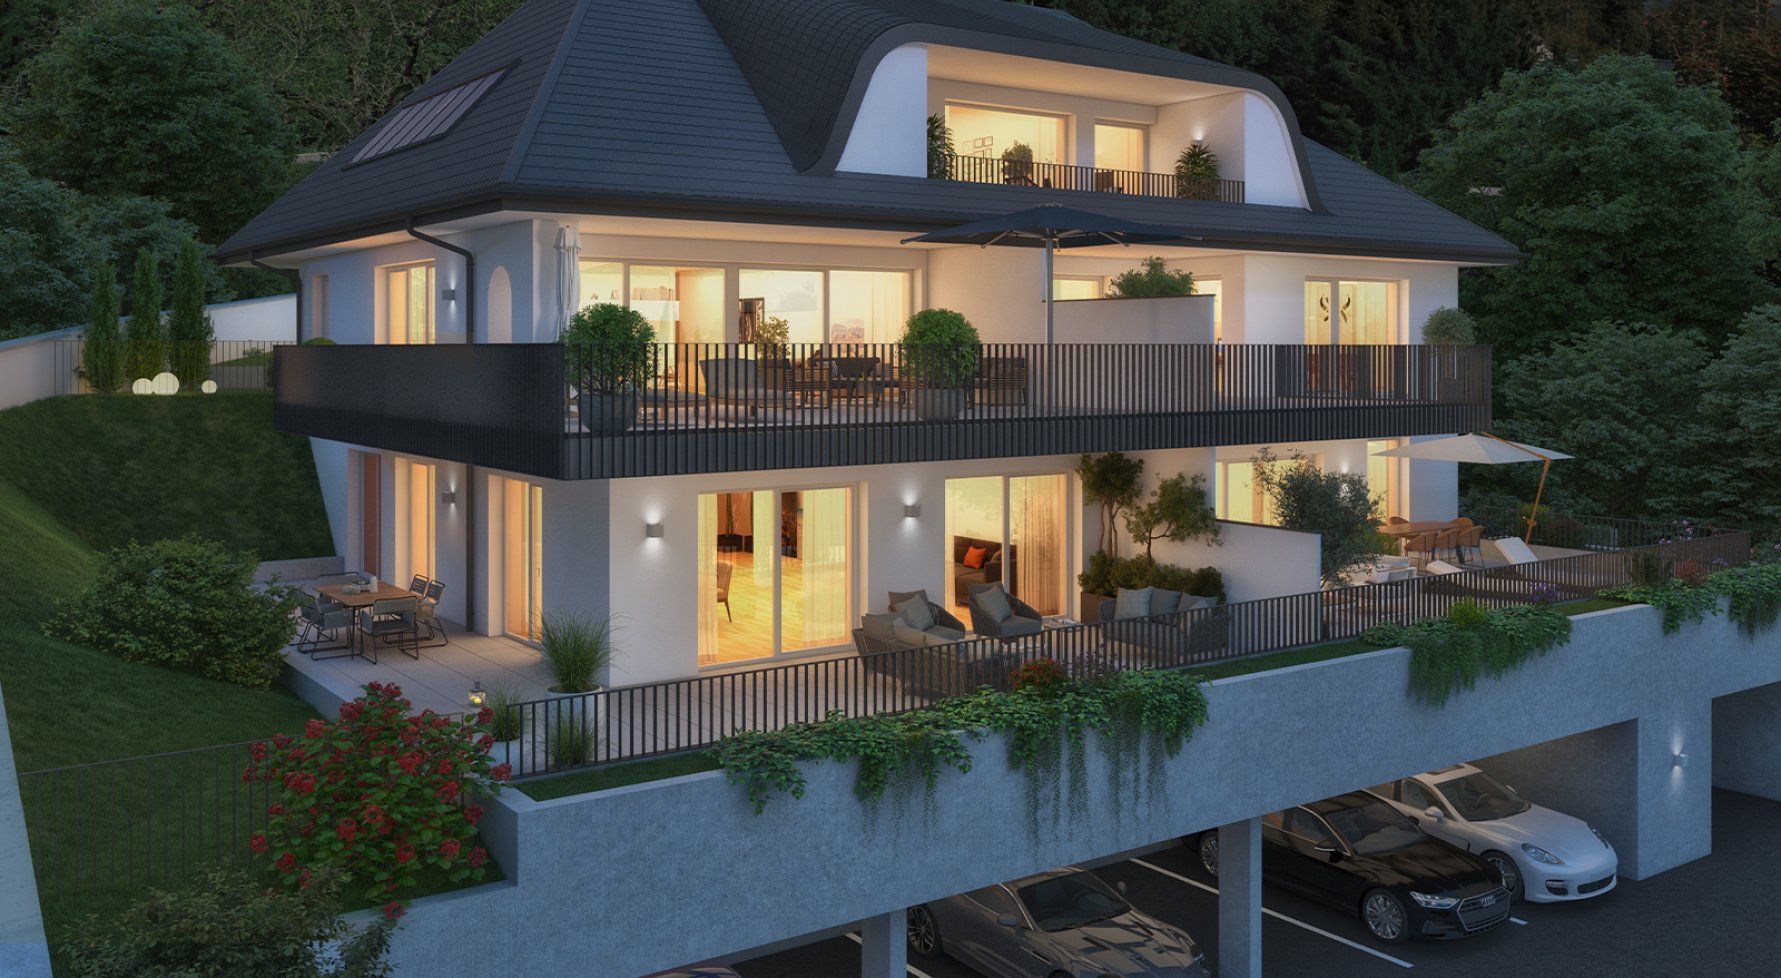 Immobilie in 5020 Salzburg - Parsch: Moderne 4-Zimmer-Wohnung mit großer Terrasse und Garten - bild 1